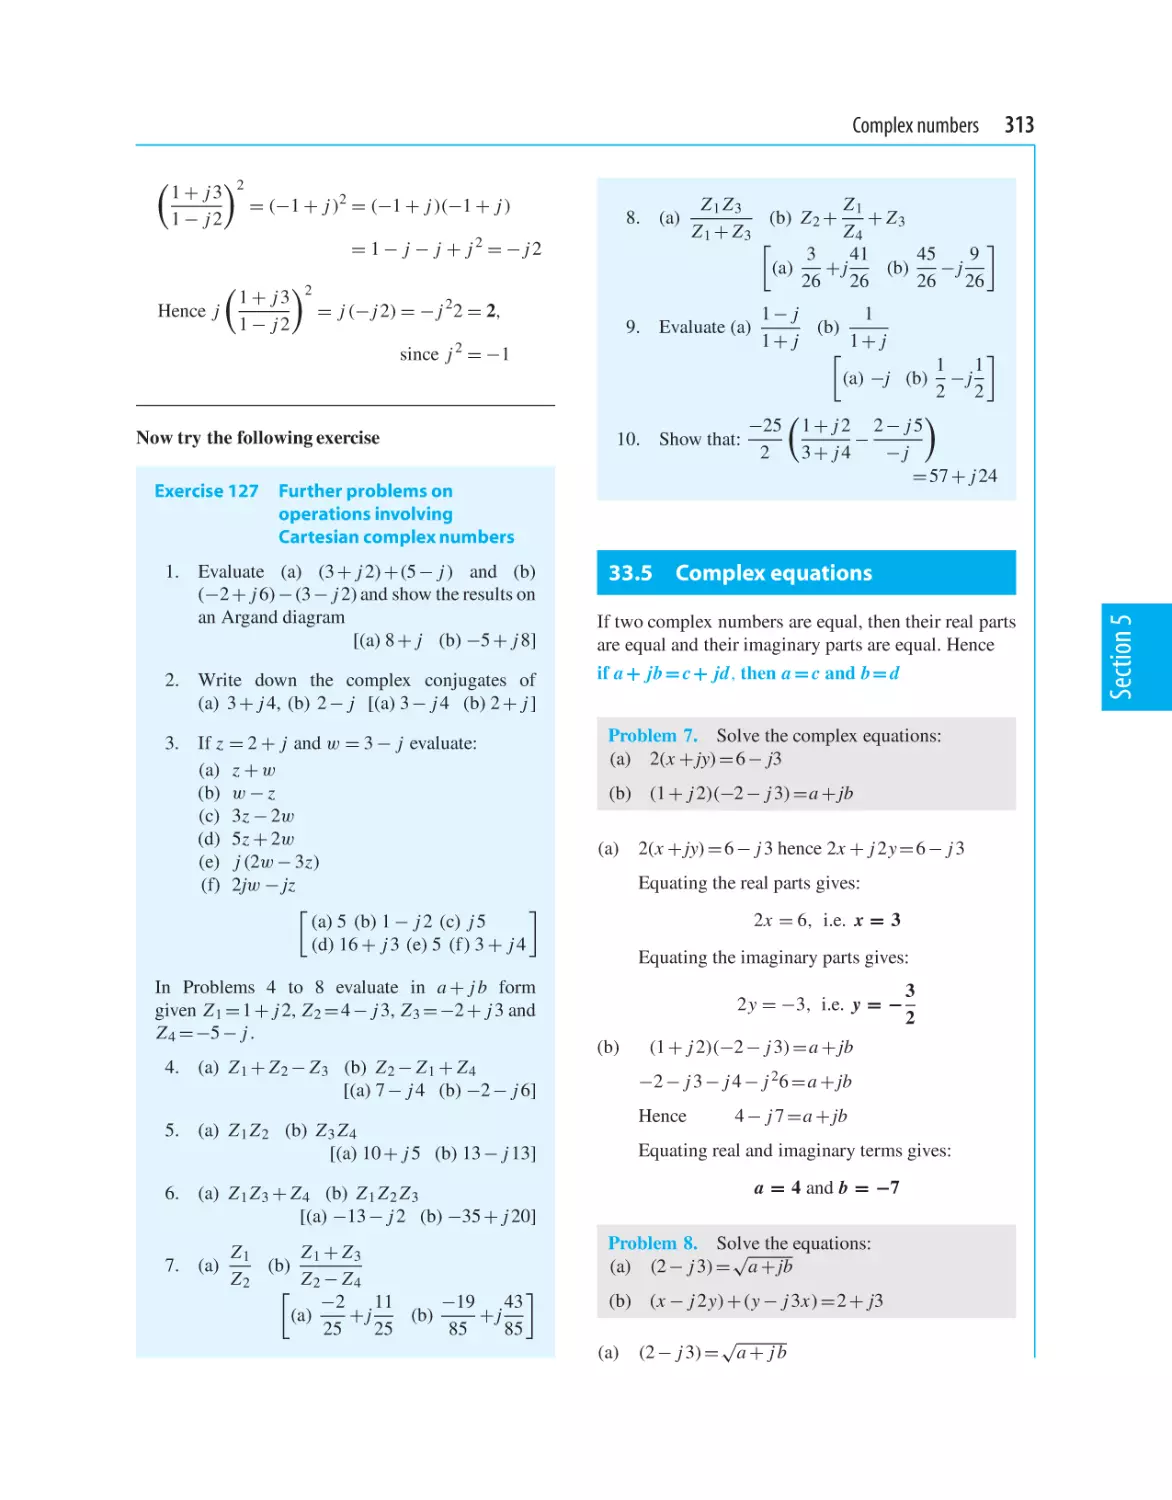 33.5 Complex equations